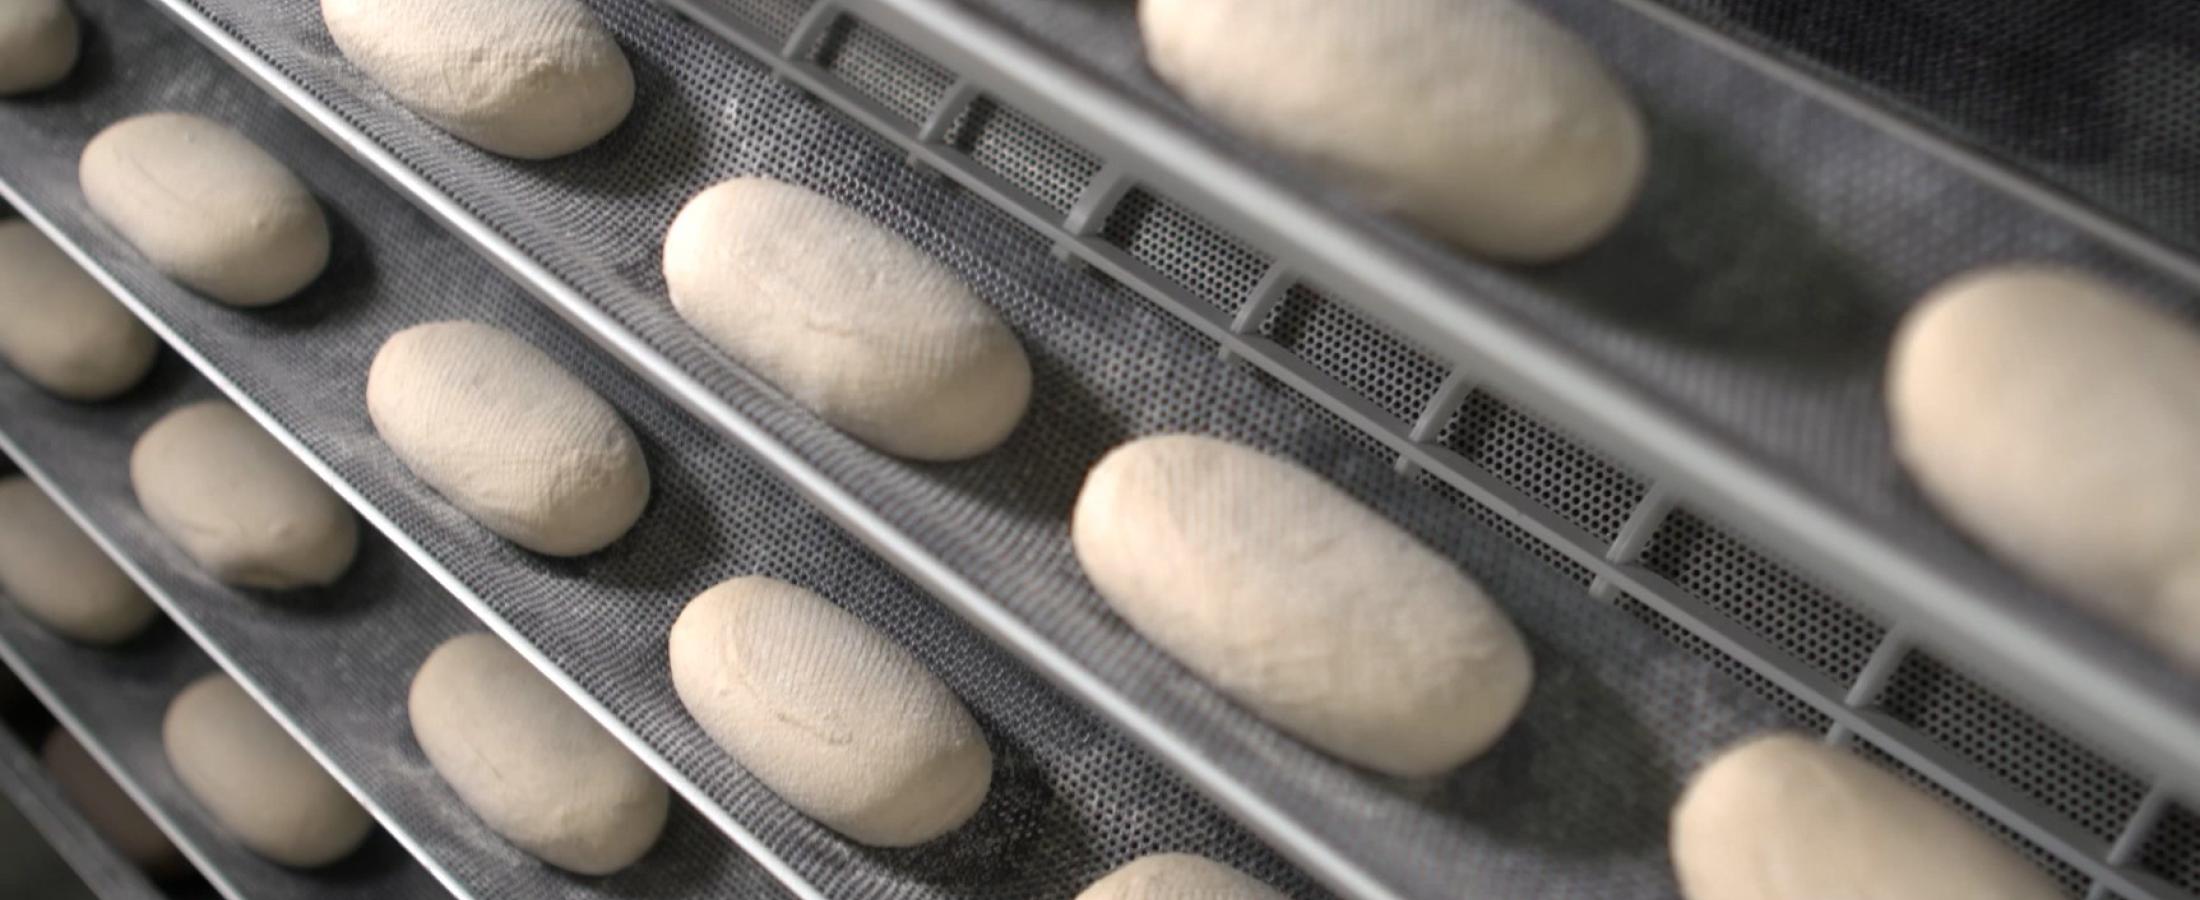 bread roll dough